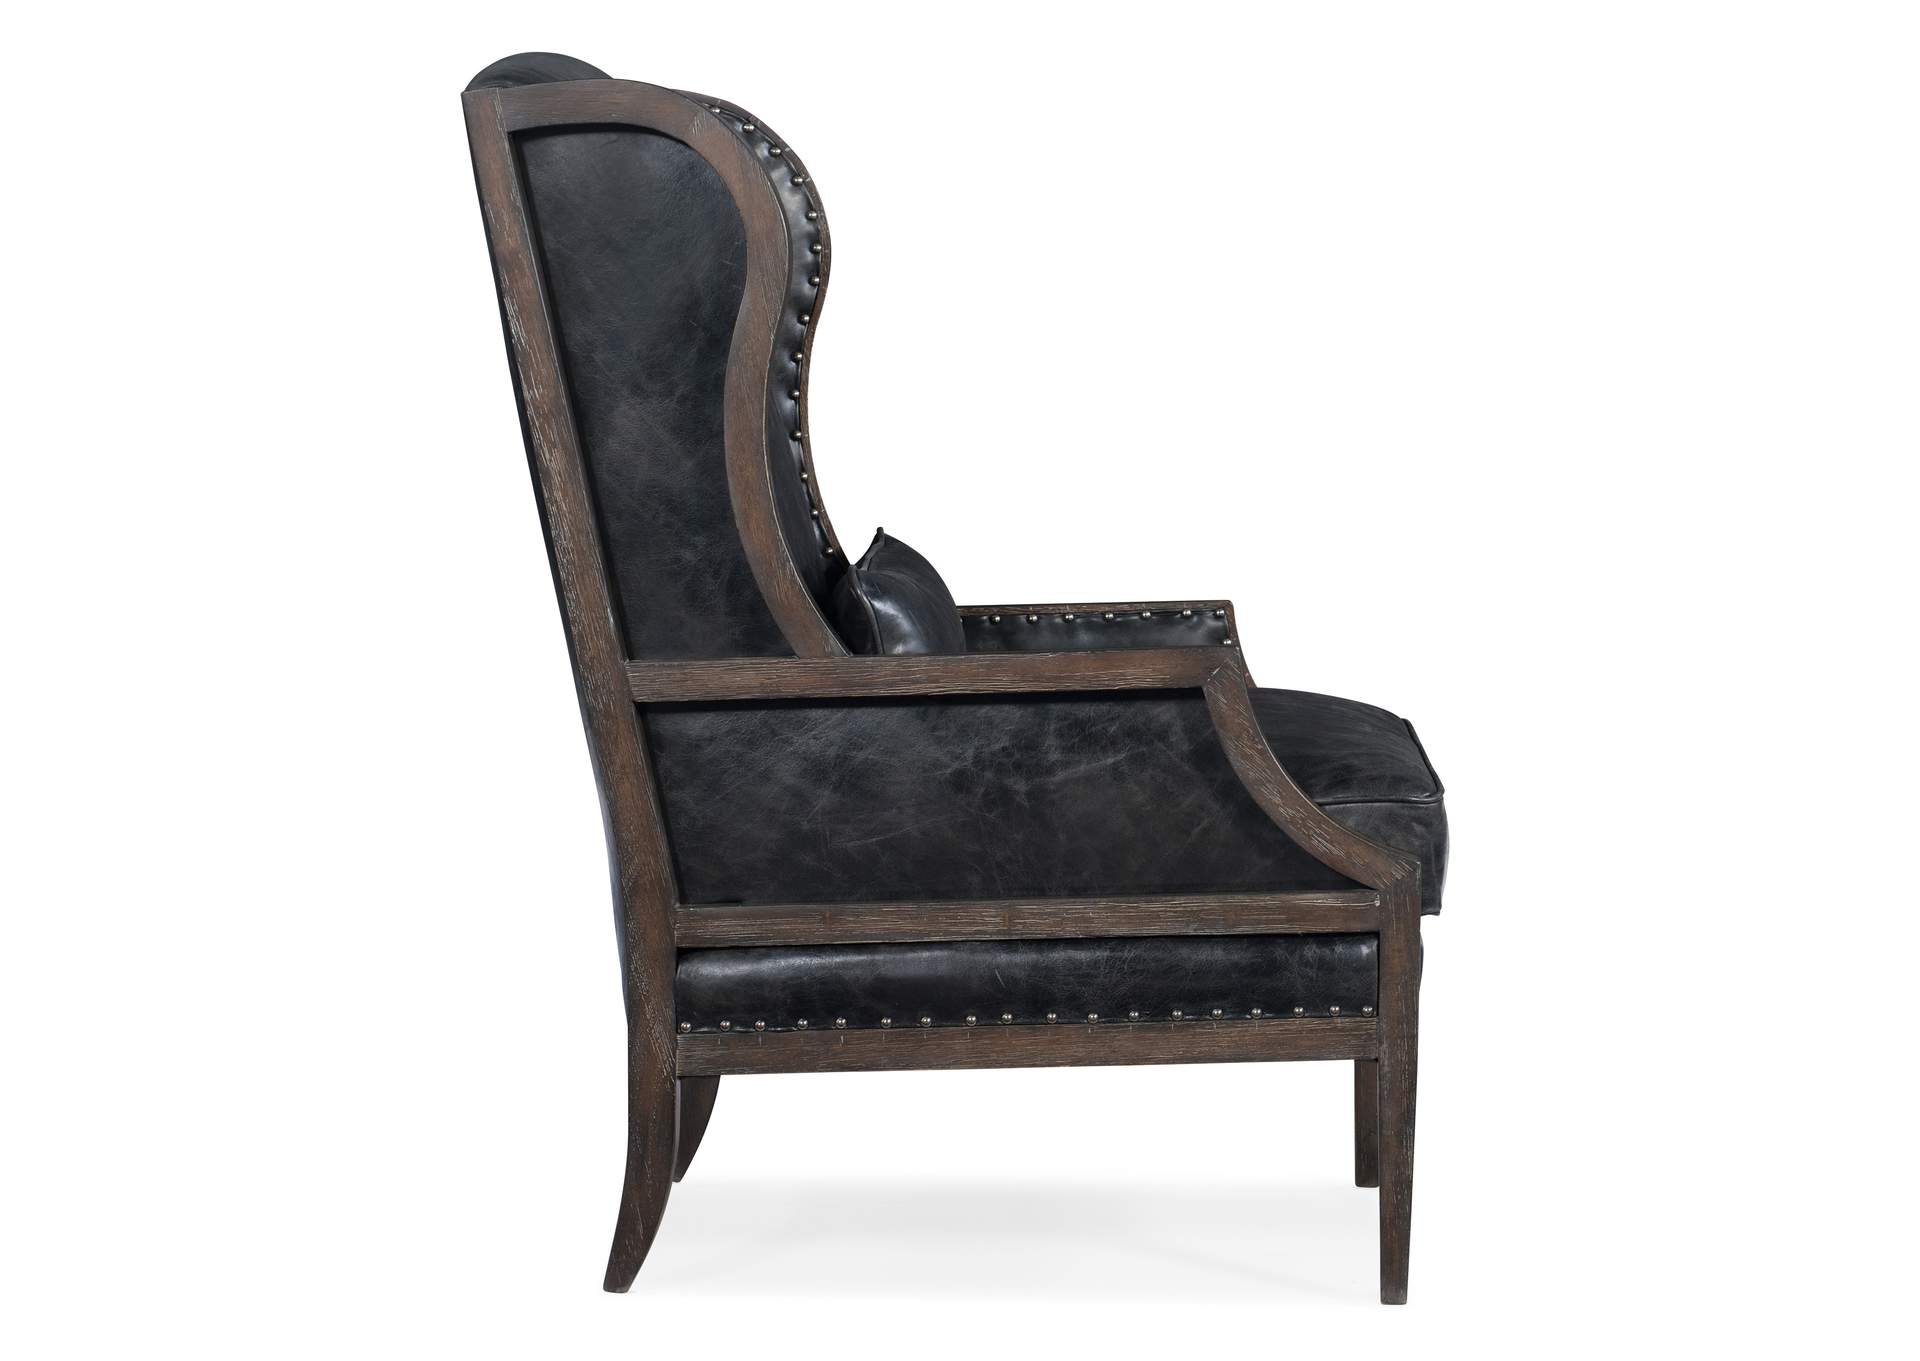 Laurel Laurel Exposed Wood Club Chair,Hooker Furniture